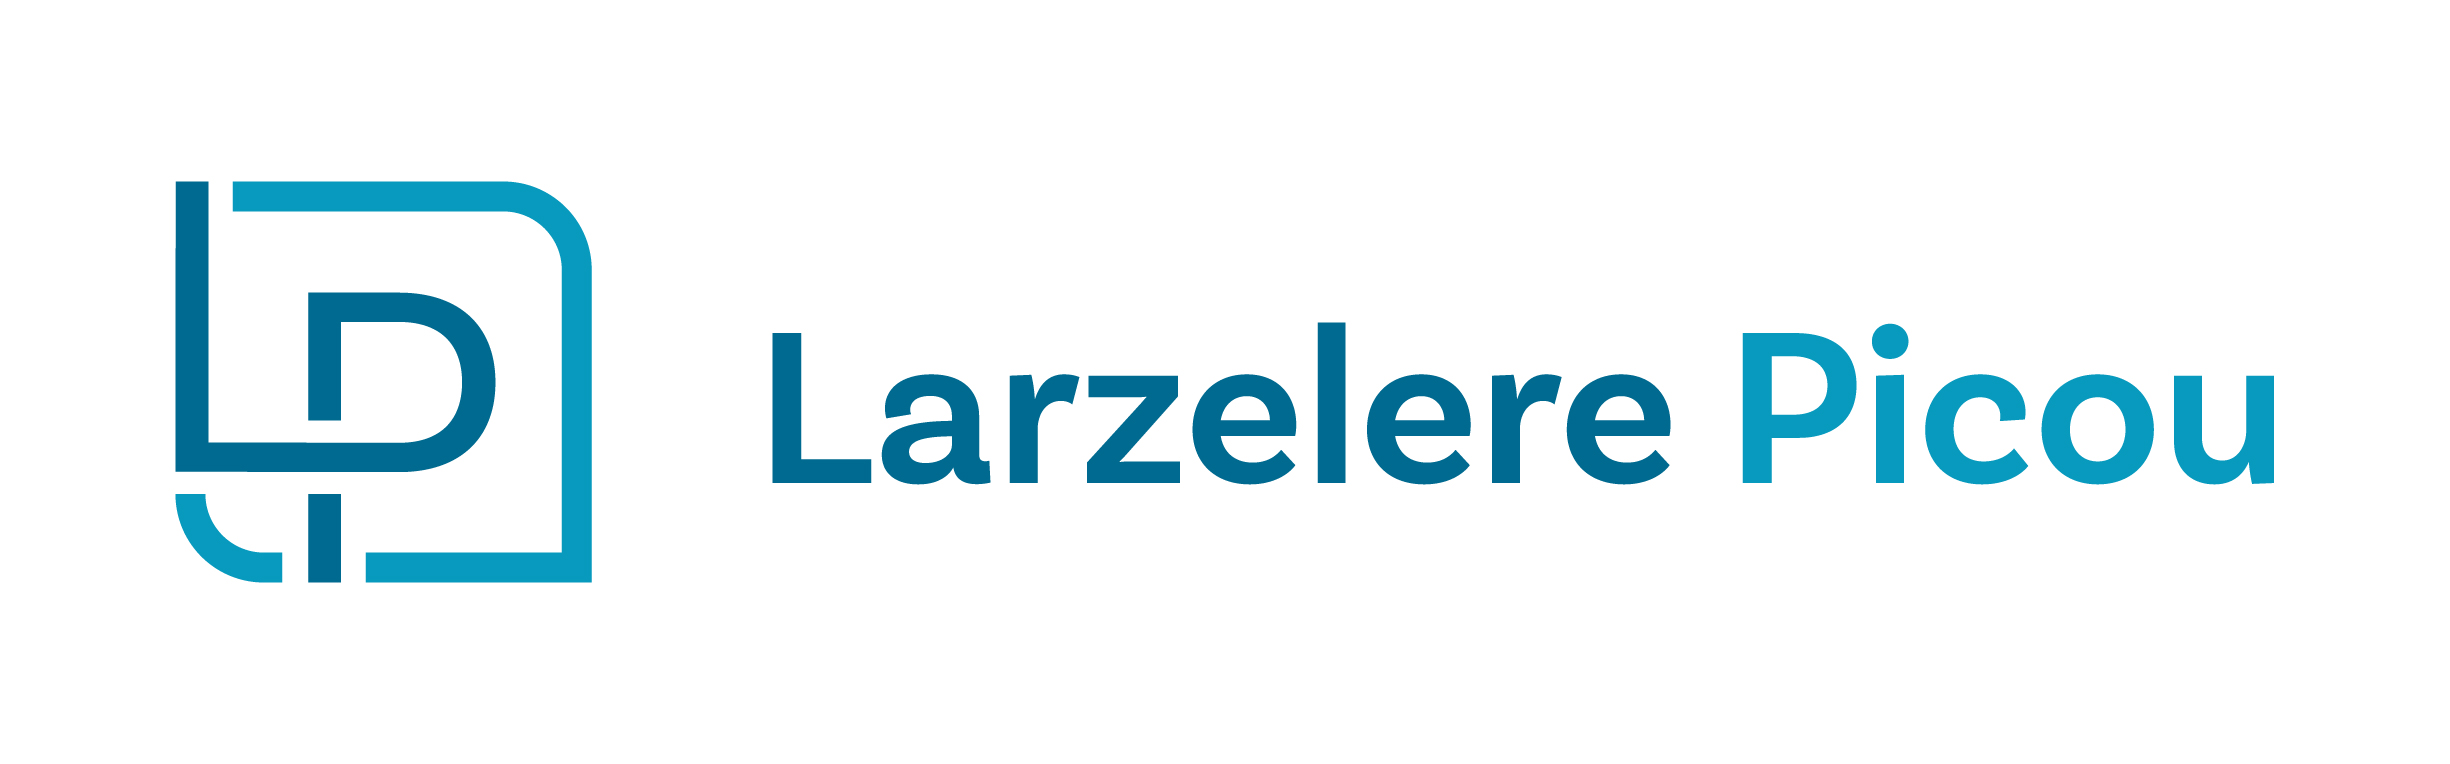 Larzelere March 2019